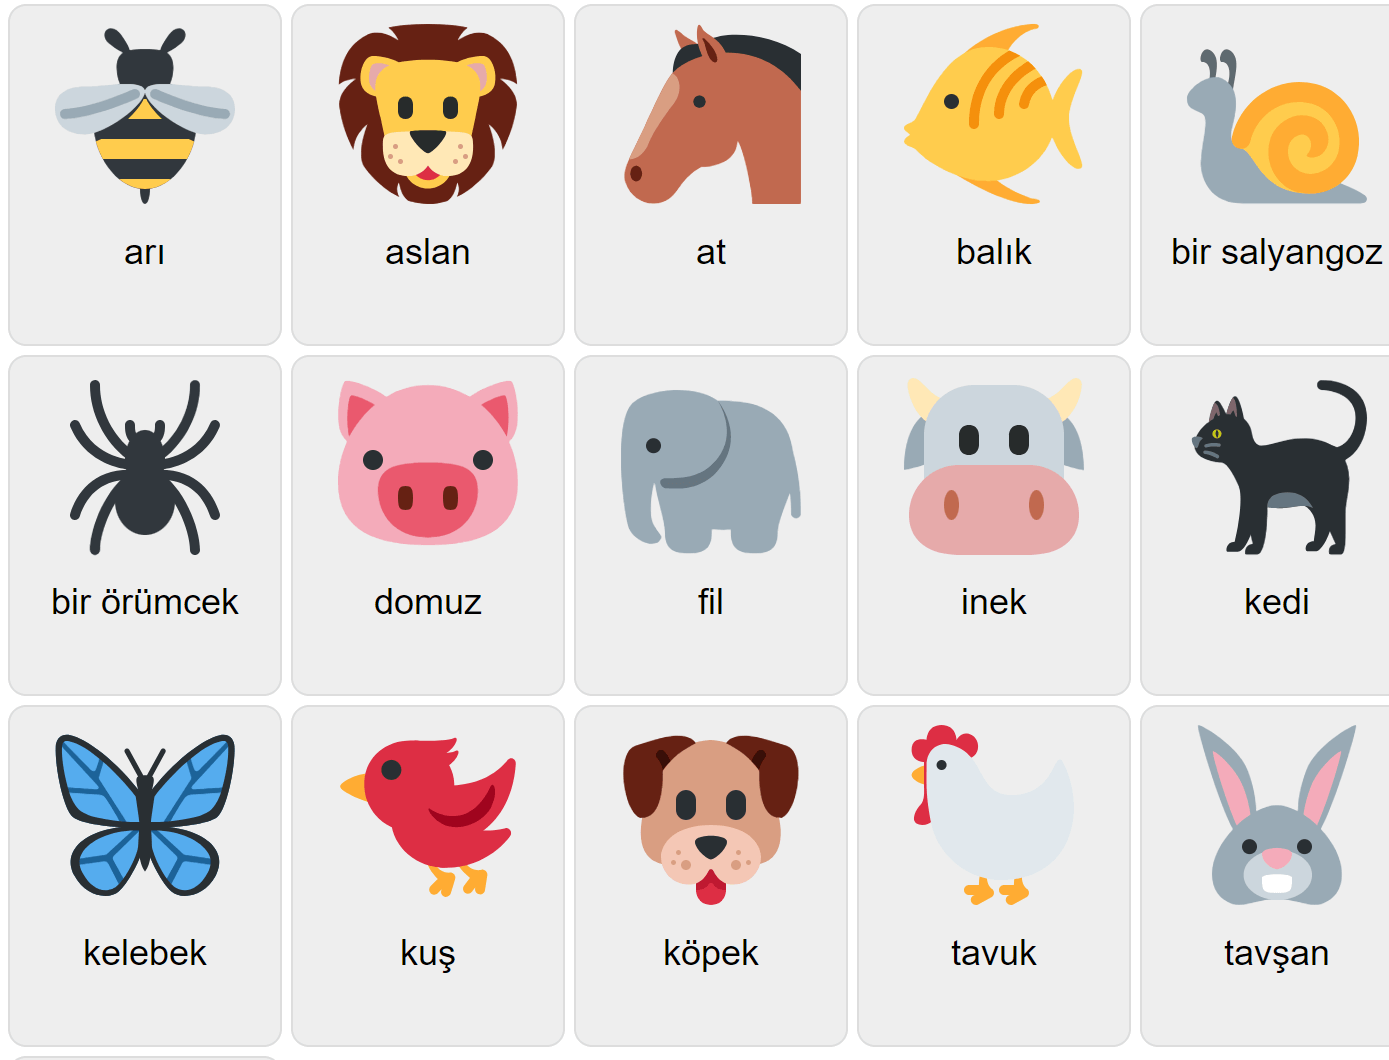 Animals in Turkish